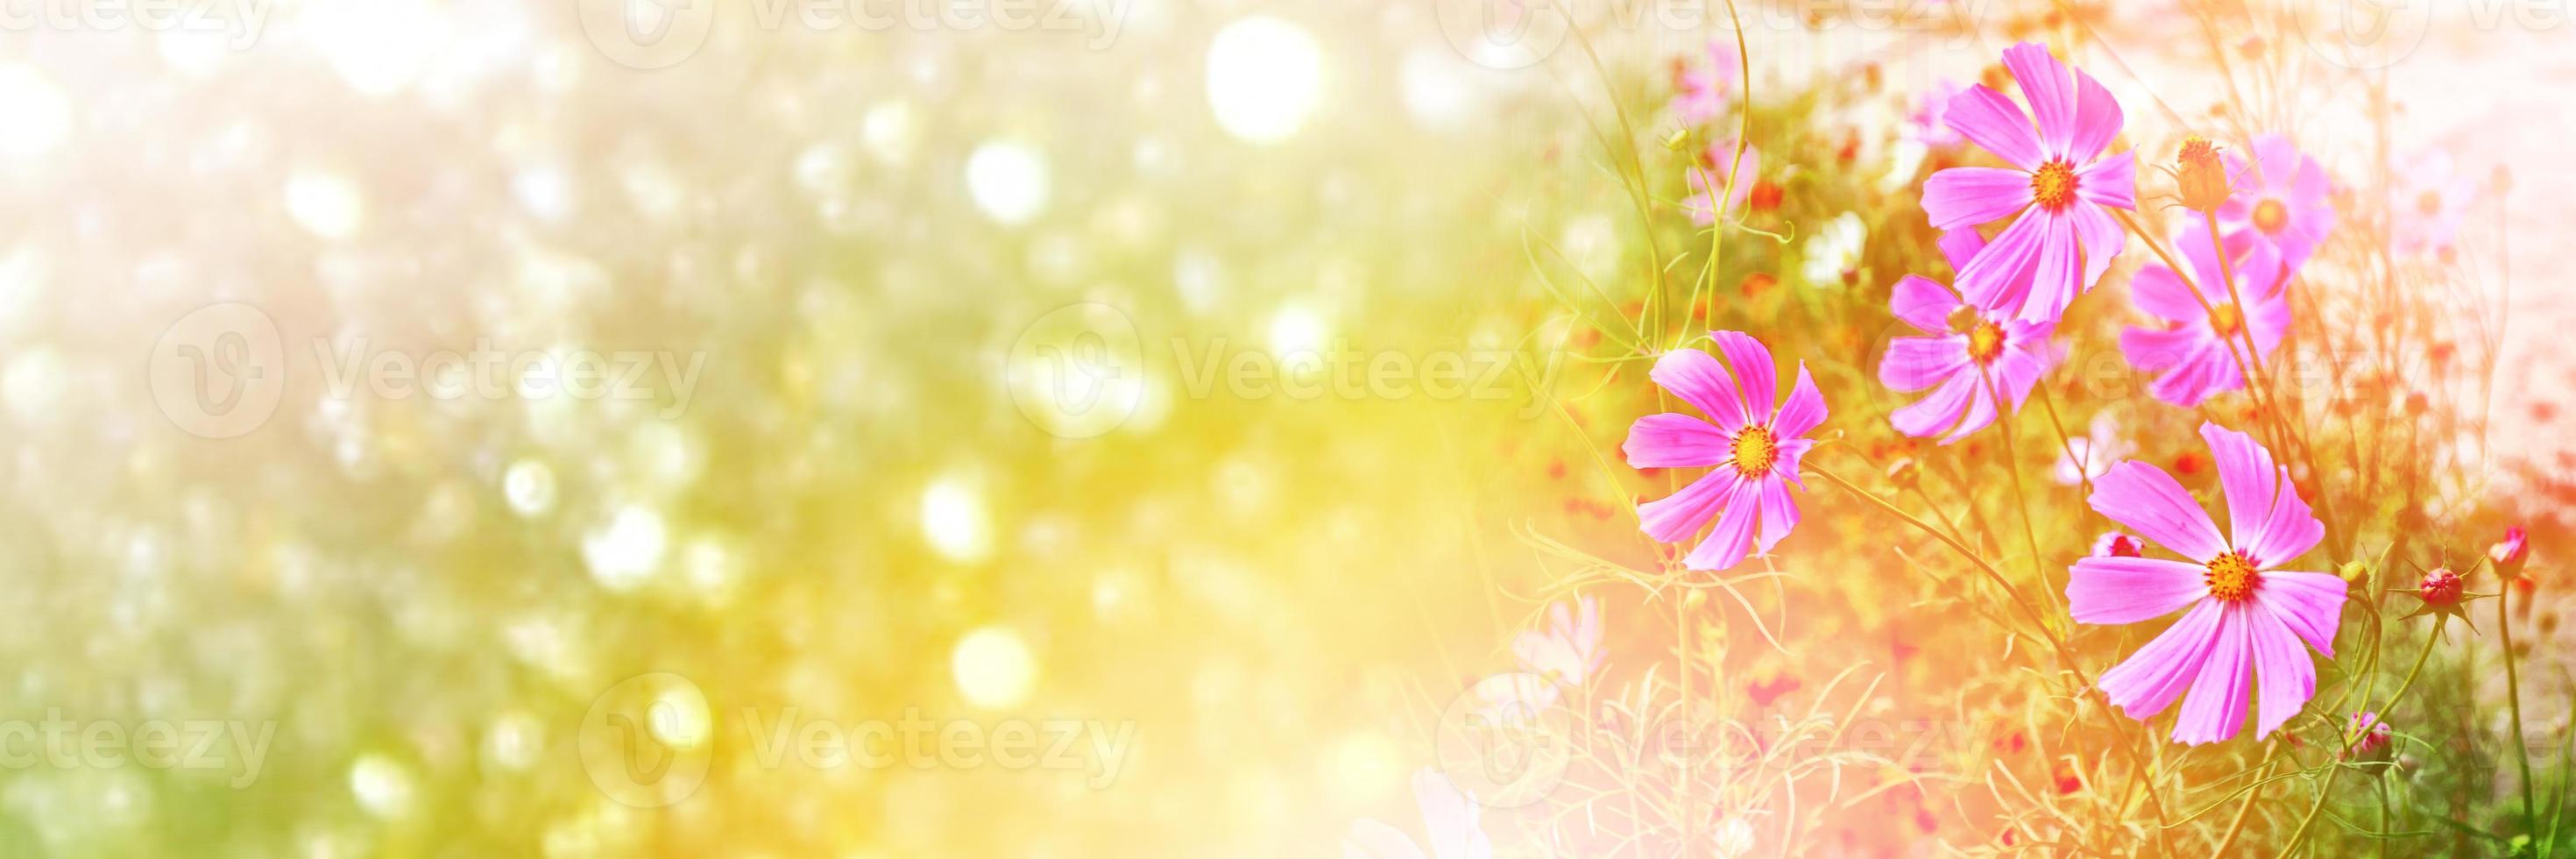 fleurs cosmos colorées sur fond de paysage d'été. photo